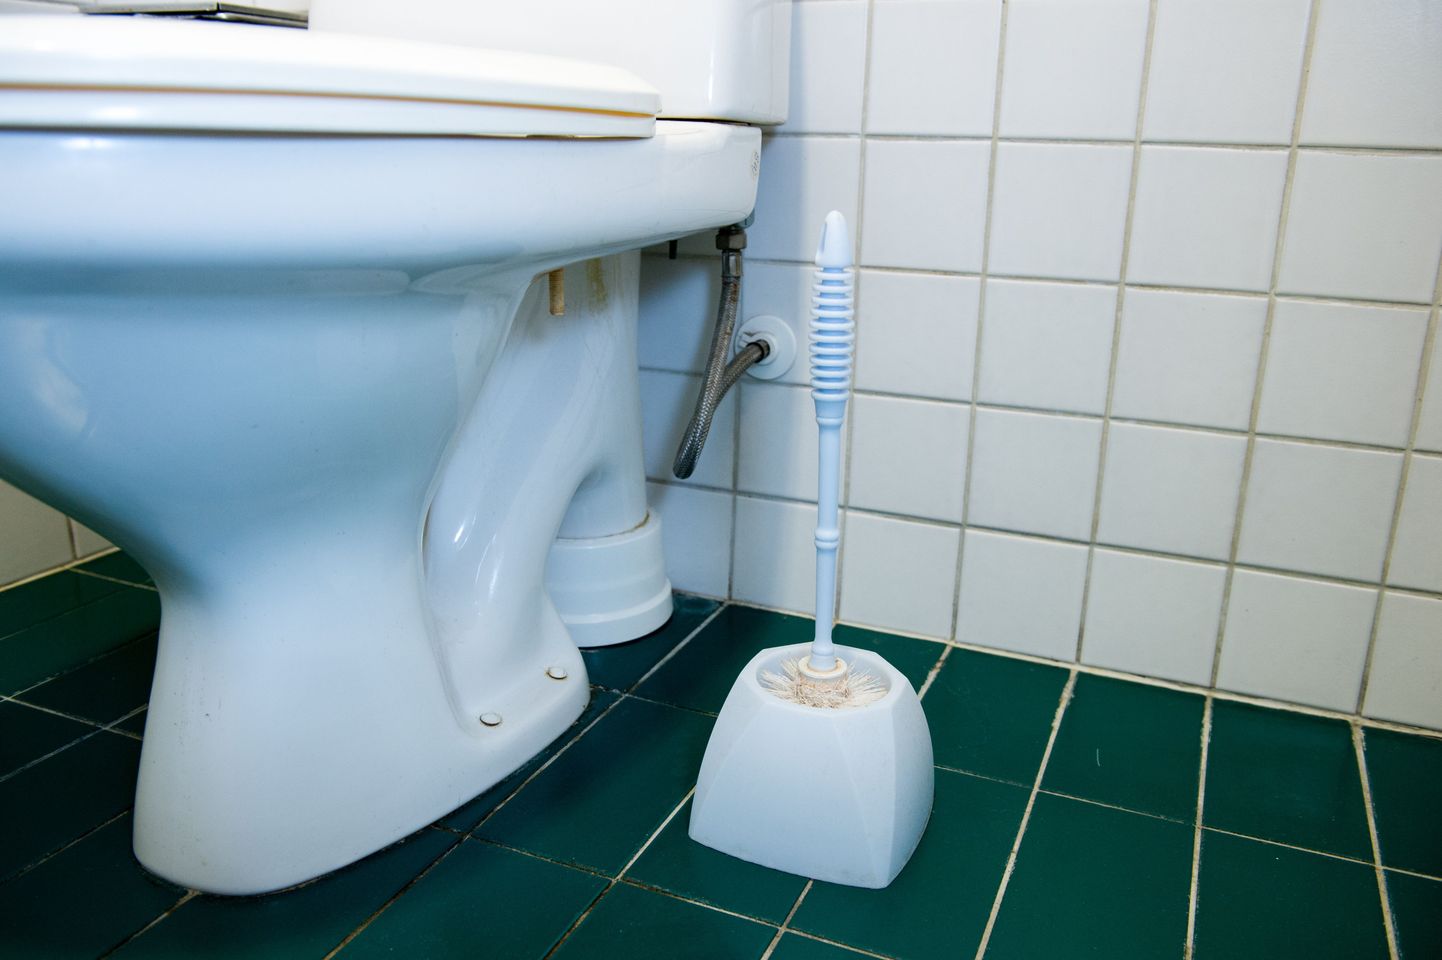 WC võib ju korras olla, aga ilma kanalisatsioonita see ei toimi.